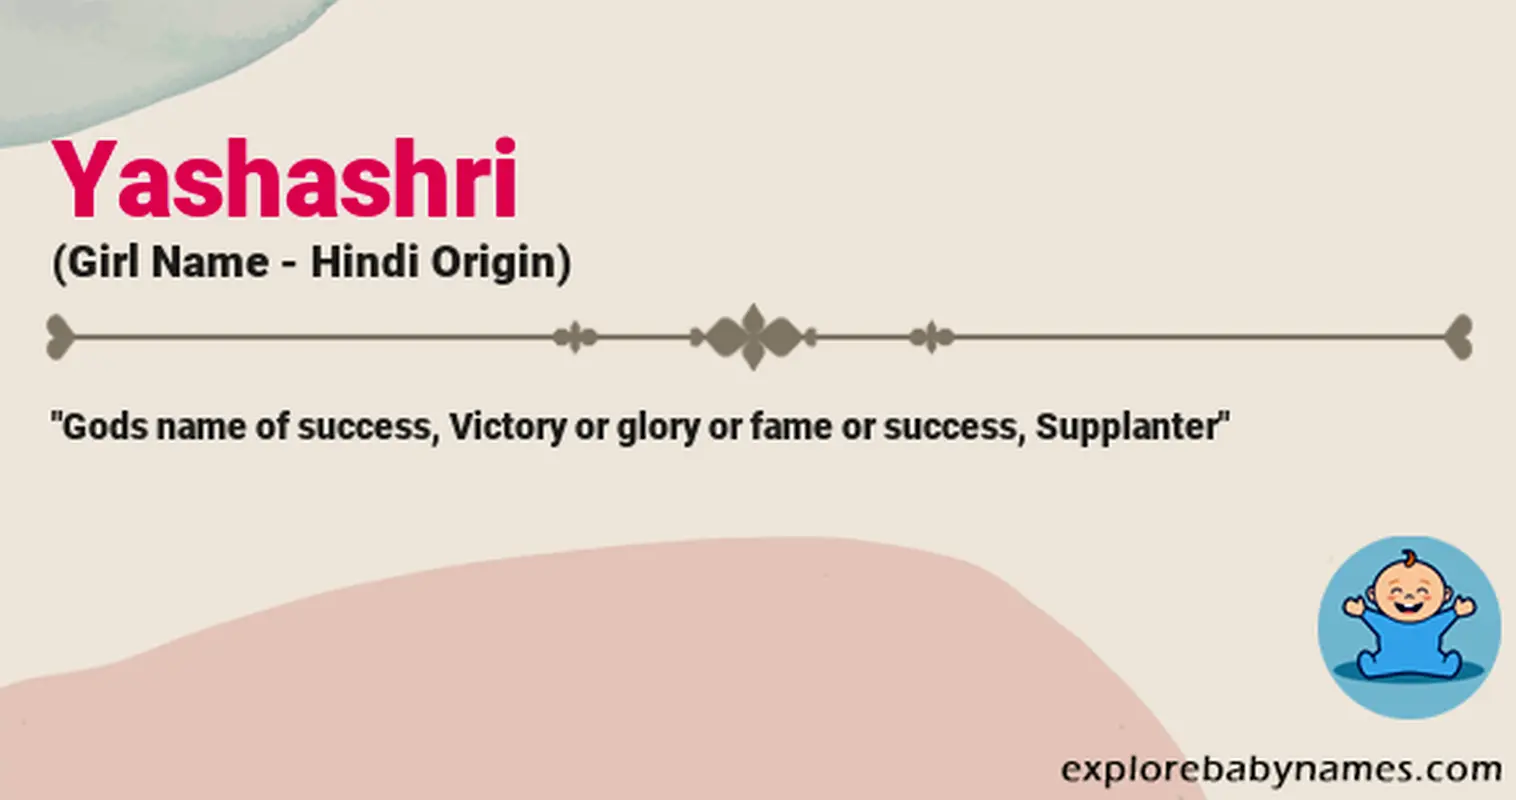 Meaning of Yashashri